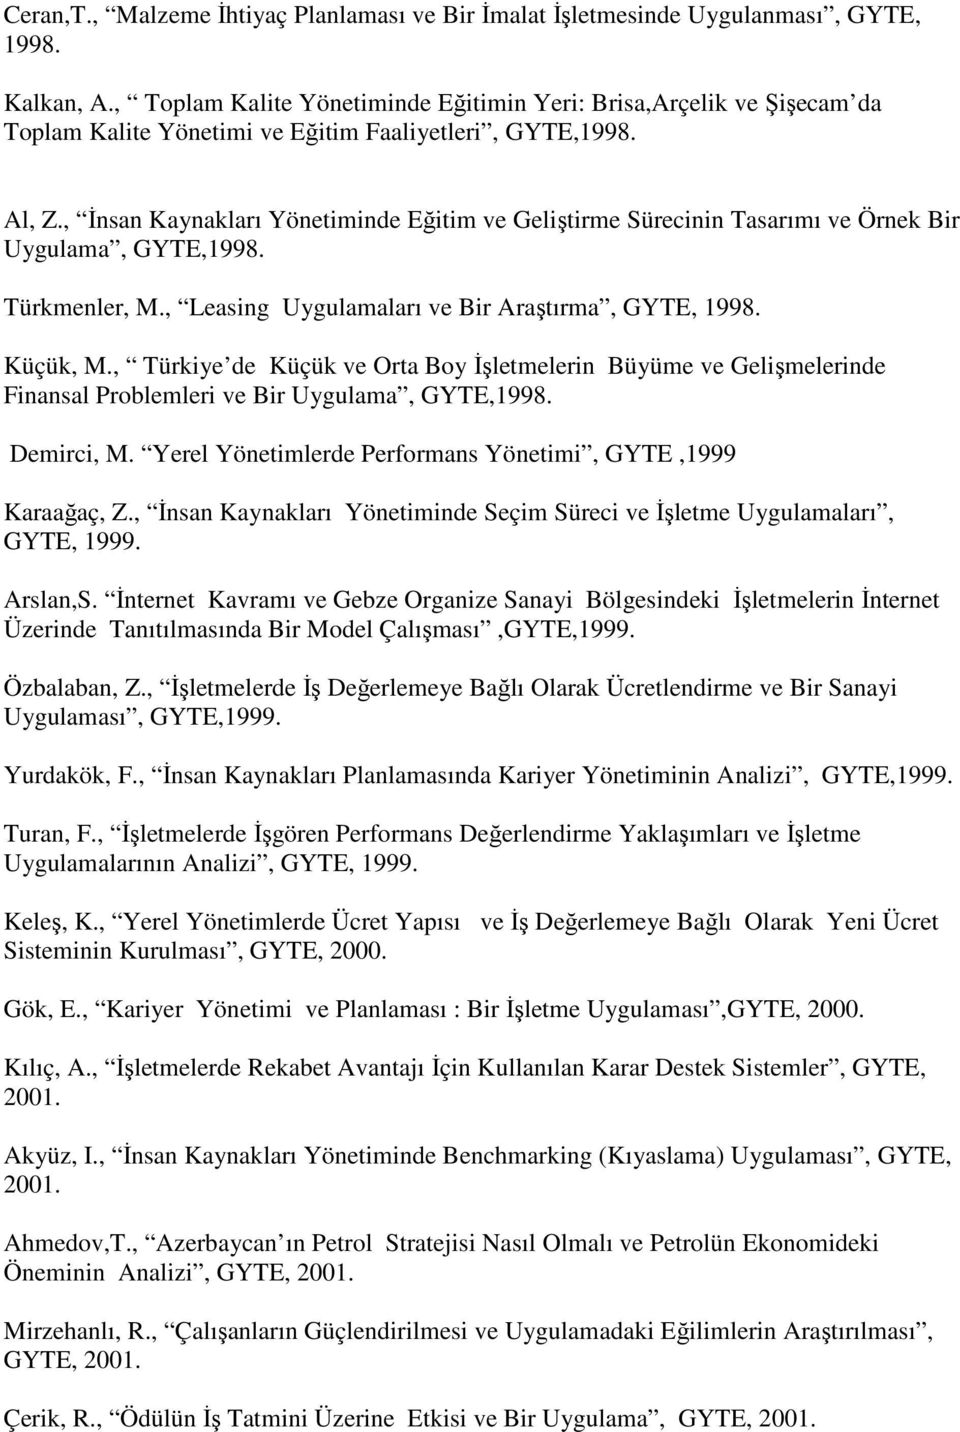 , Đnsan Kaynakları Yönetiminde Eğitim ve Geliştirme Sürecinin Tasarımı ve Örnek Bir Uygulama, GYTE,1998. Türkmenler, M., Leasing Uygulamaları ve Bir Araştırma, GYTE, 1998. Küçük, M.